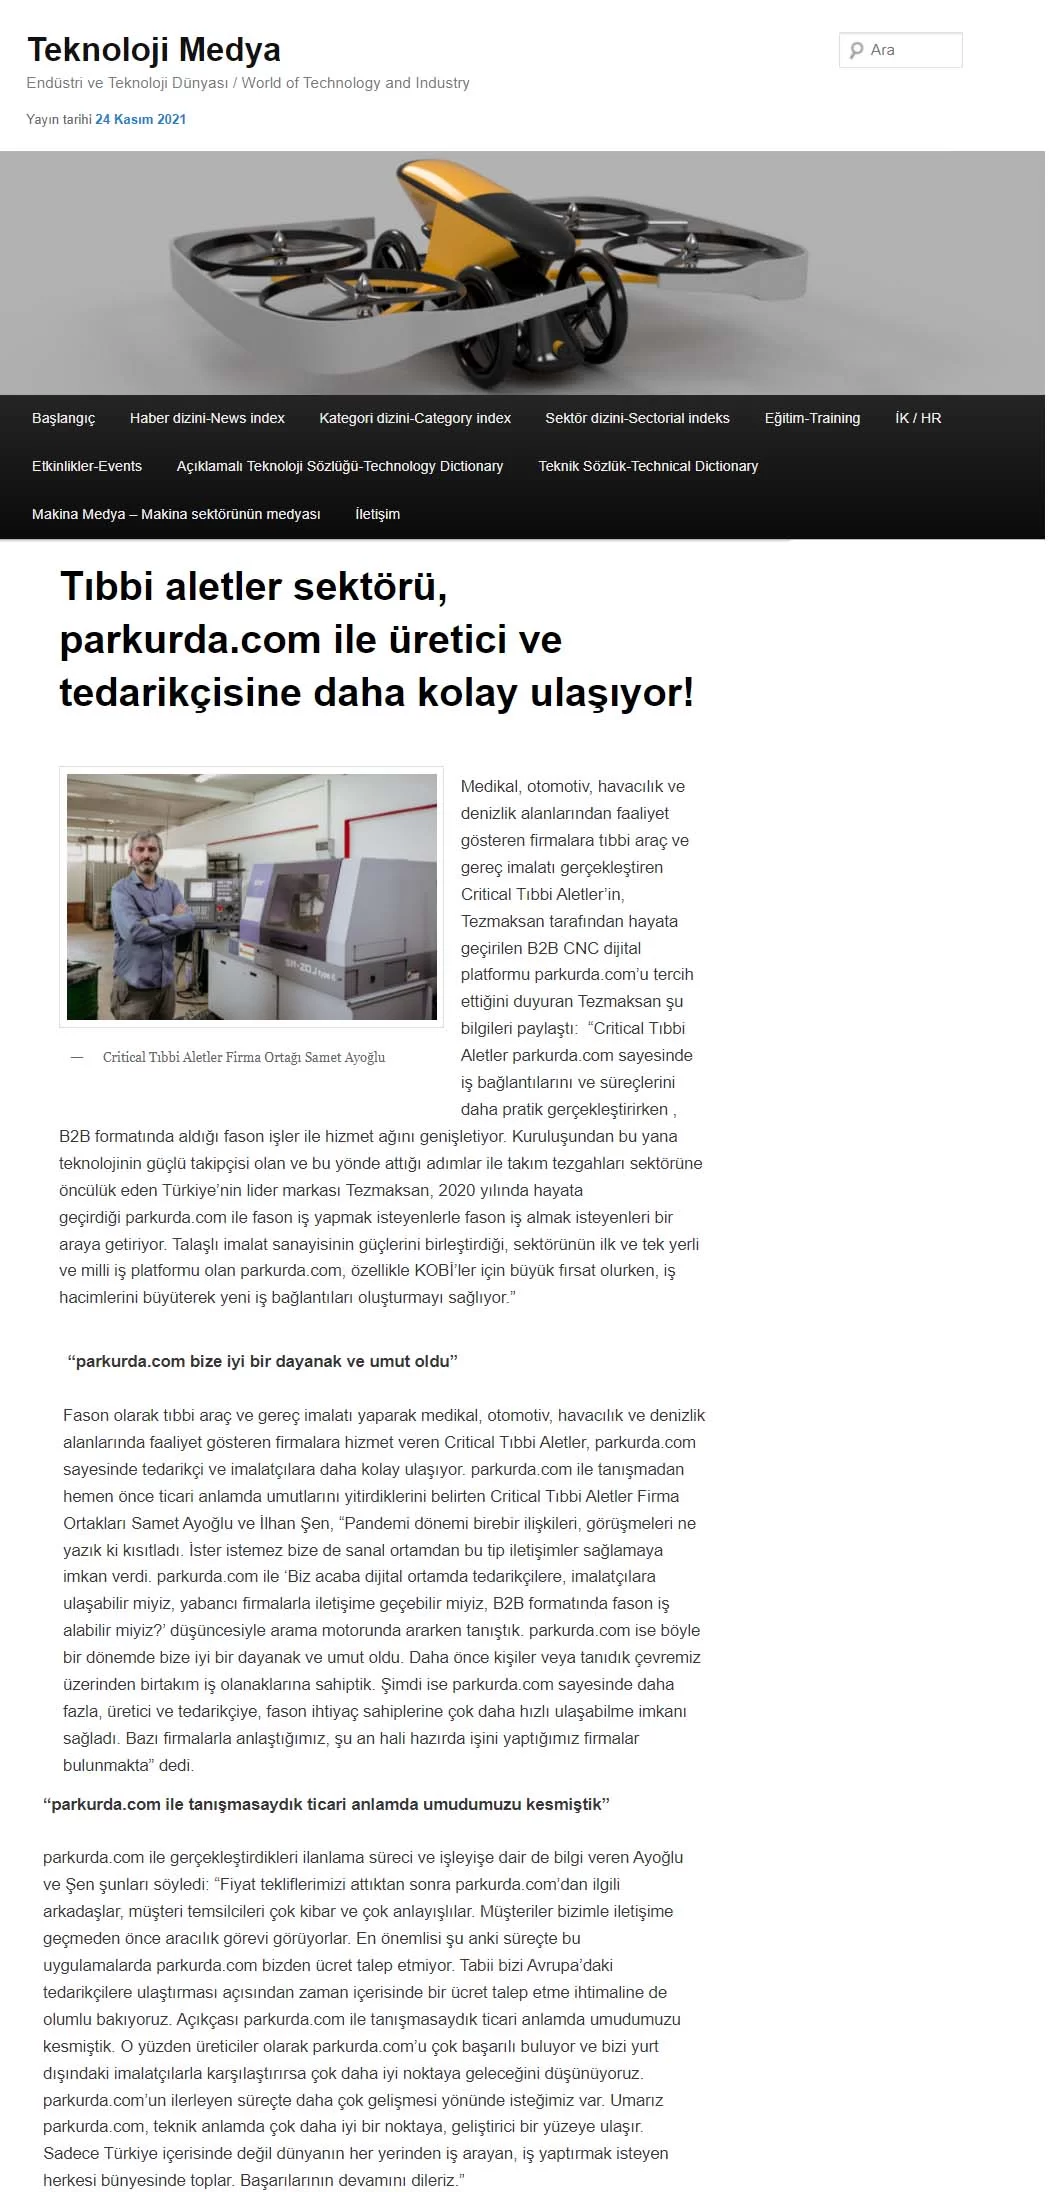 Tıbbi Aletler Sektörü, Parkurda.com İle Üretici ve Tedarikçisine Daha Kolay Ulaşıyor!